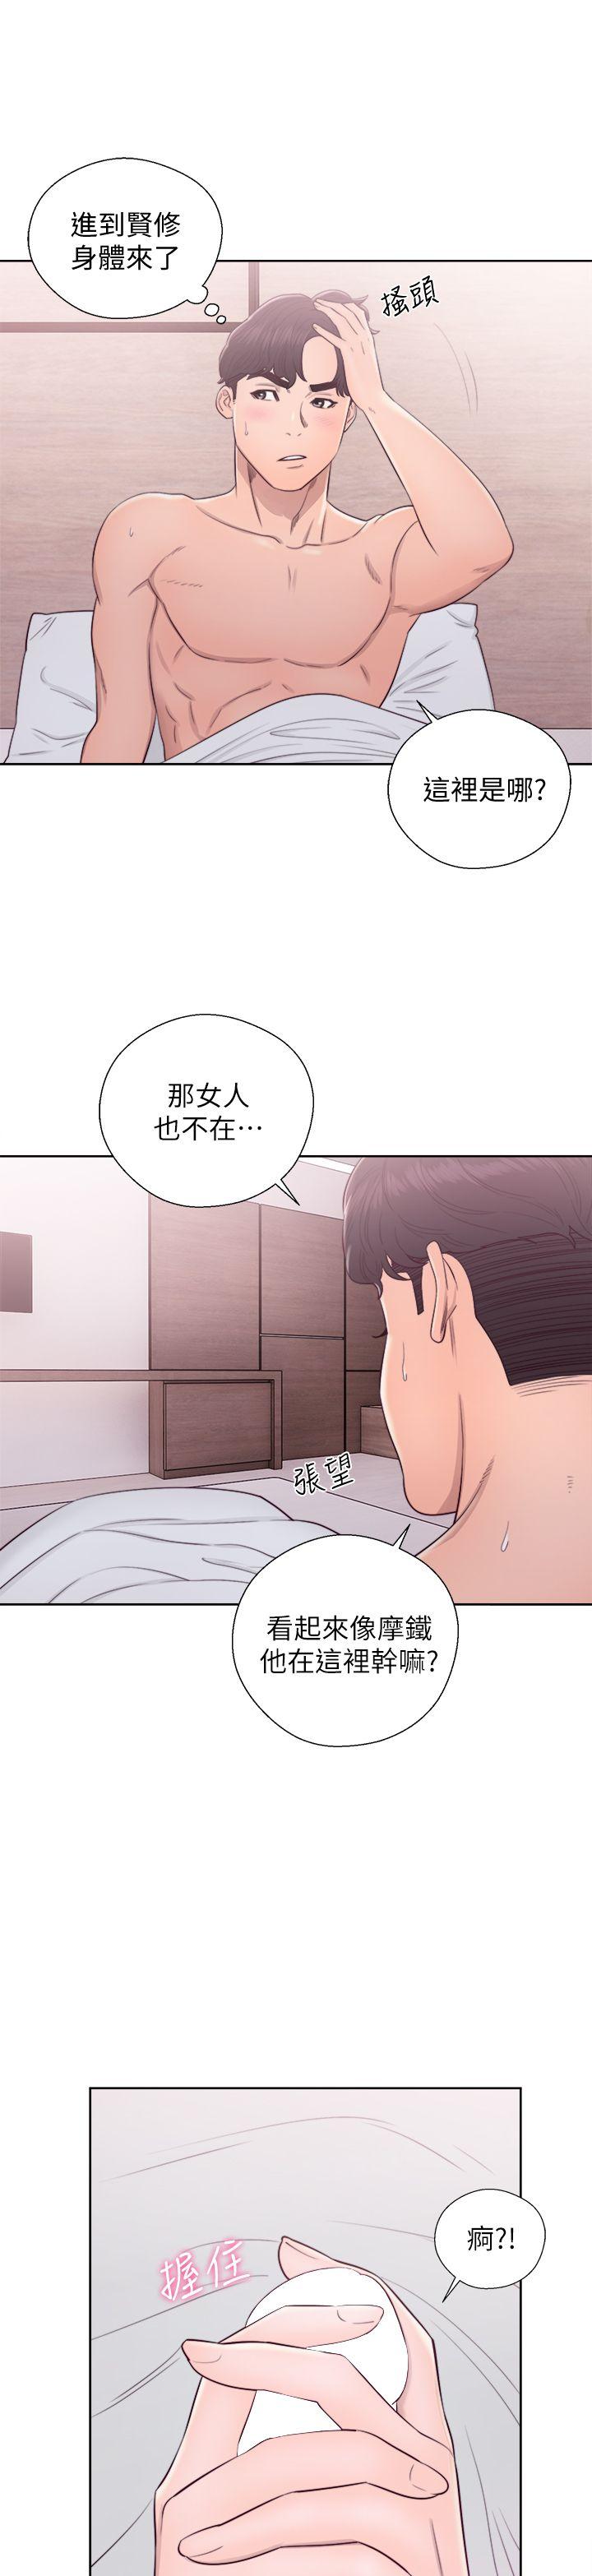 韩国污漫画 青春:逆齡小鮮肉 第27话 26